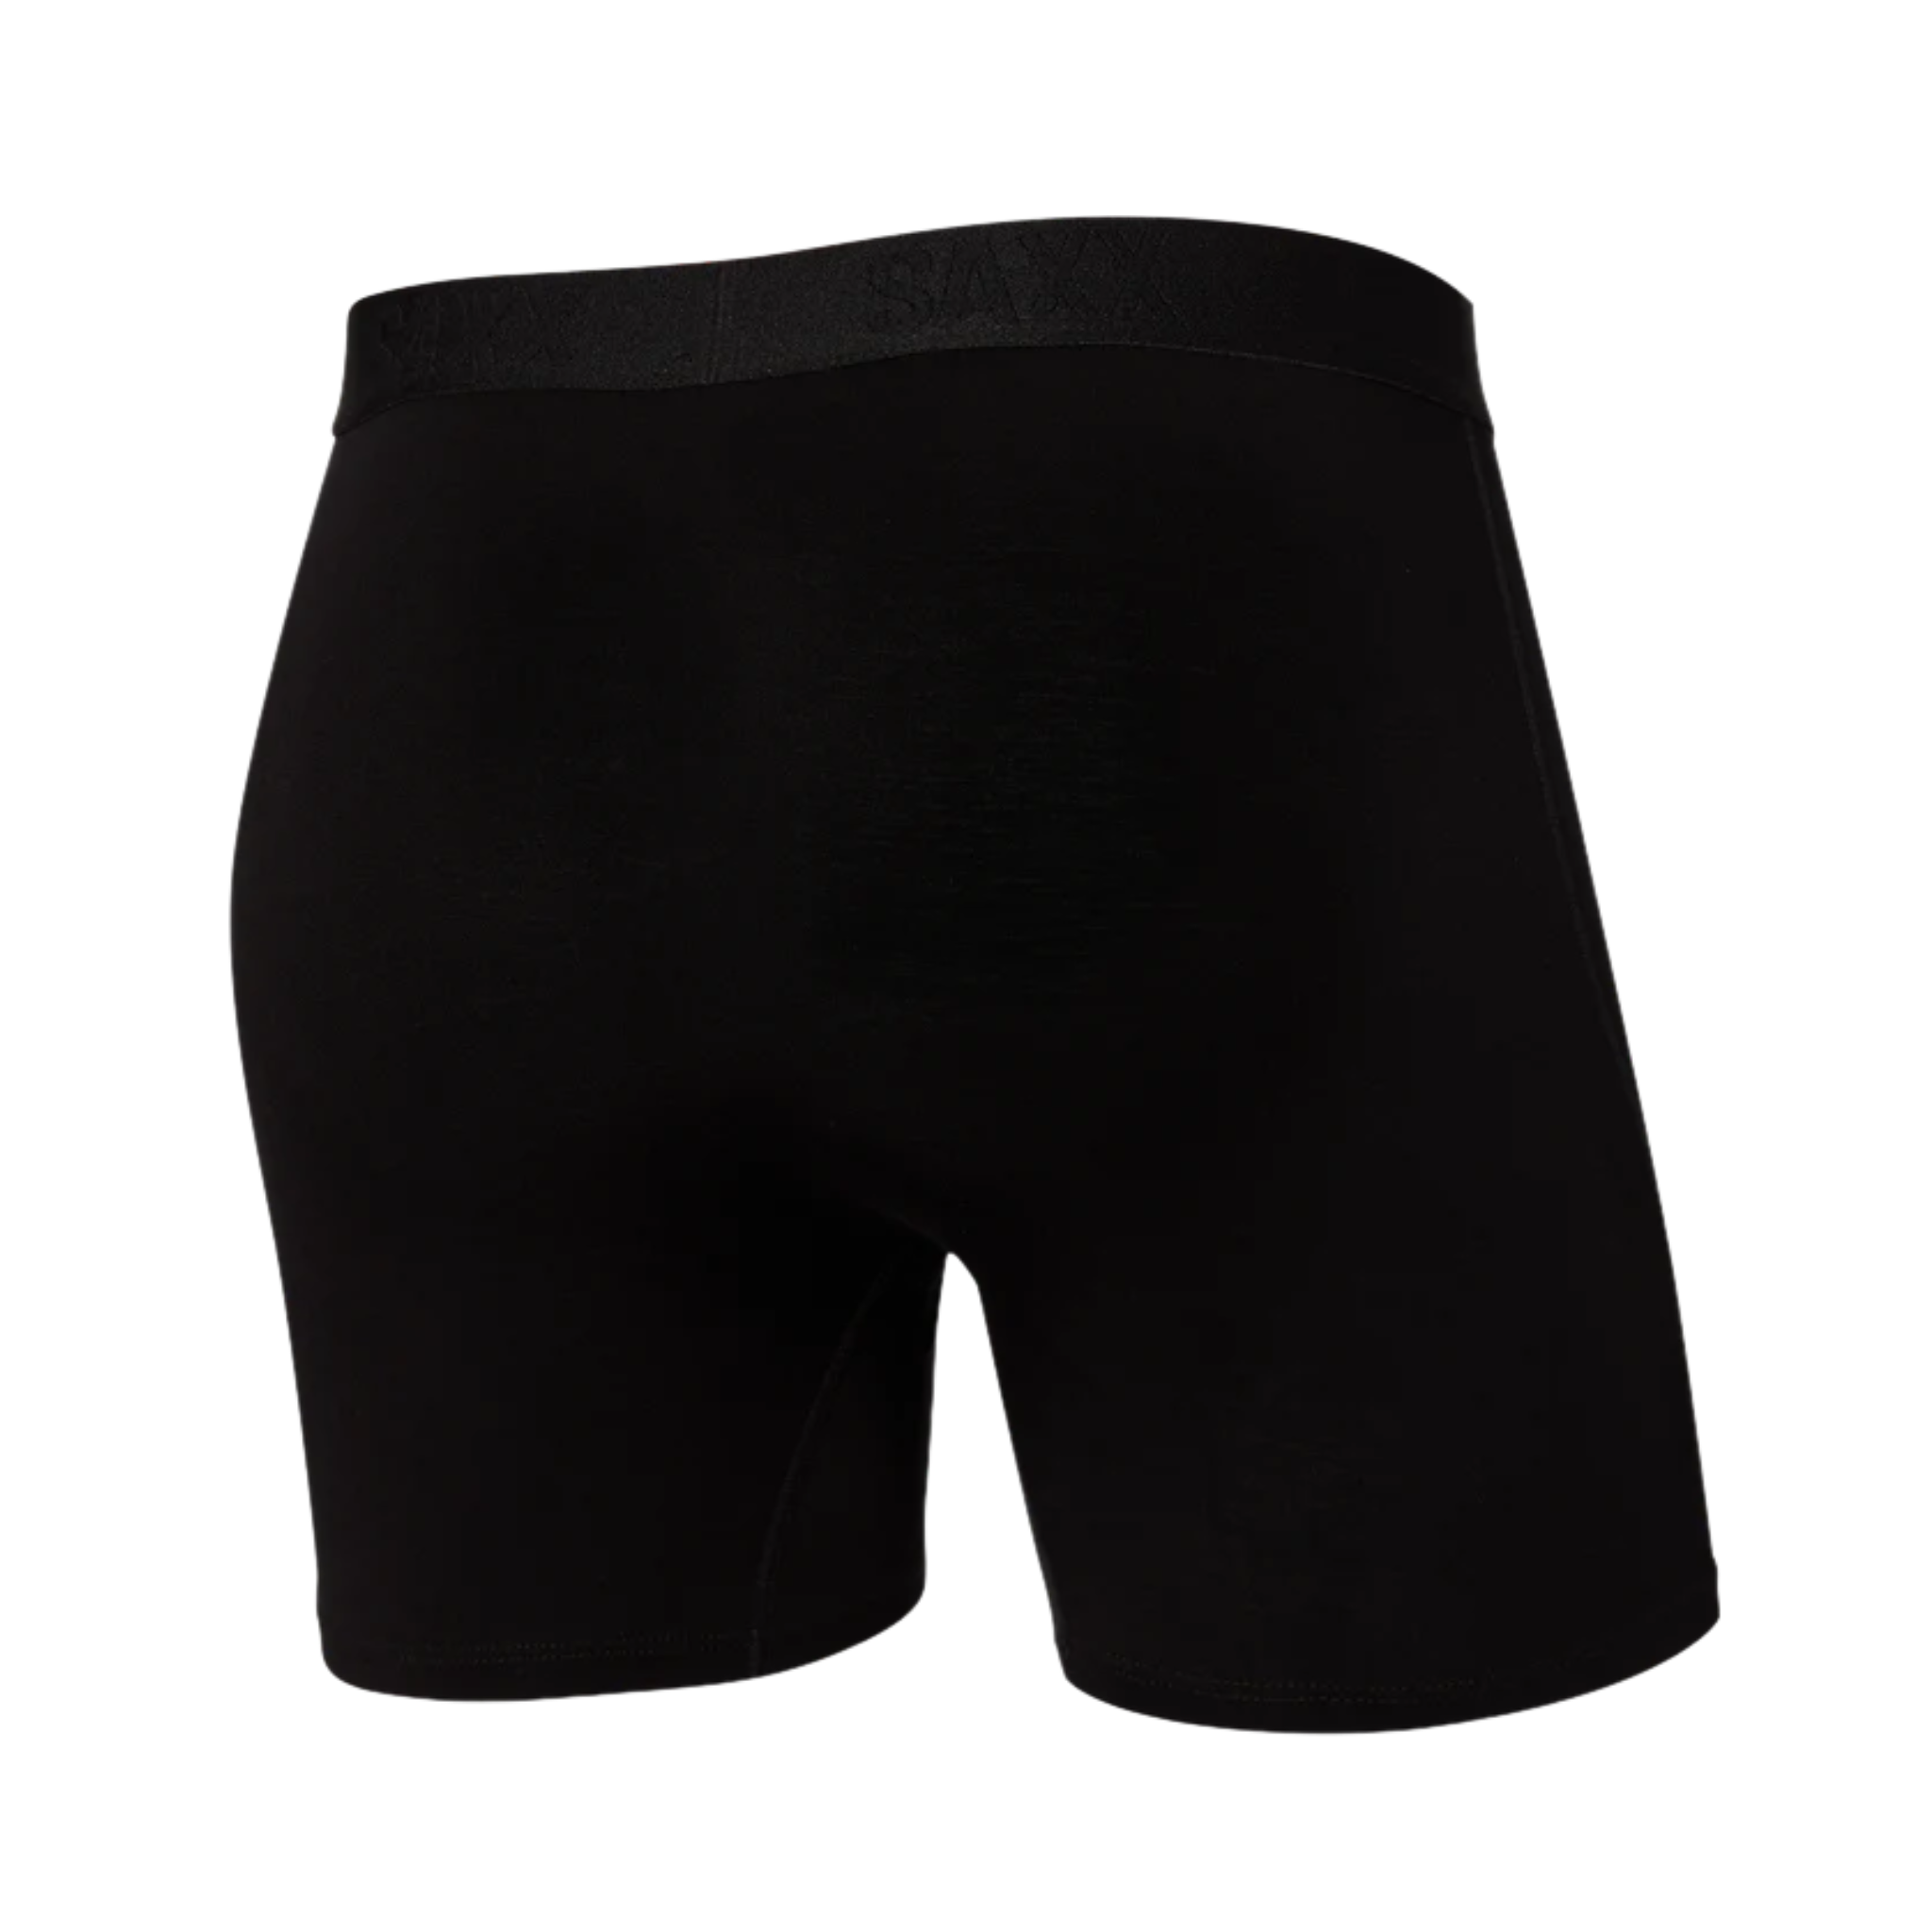  SAXX Men's Underwear – ULTRA Super Soft Briefs for Men